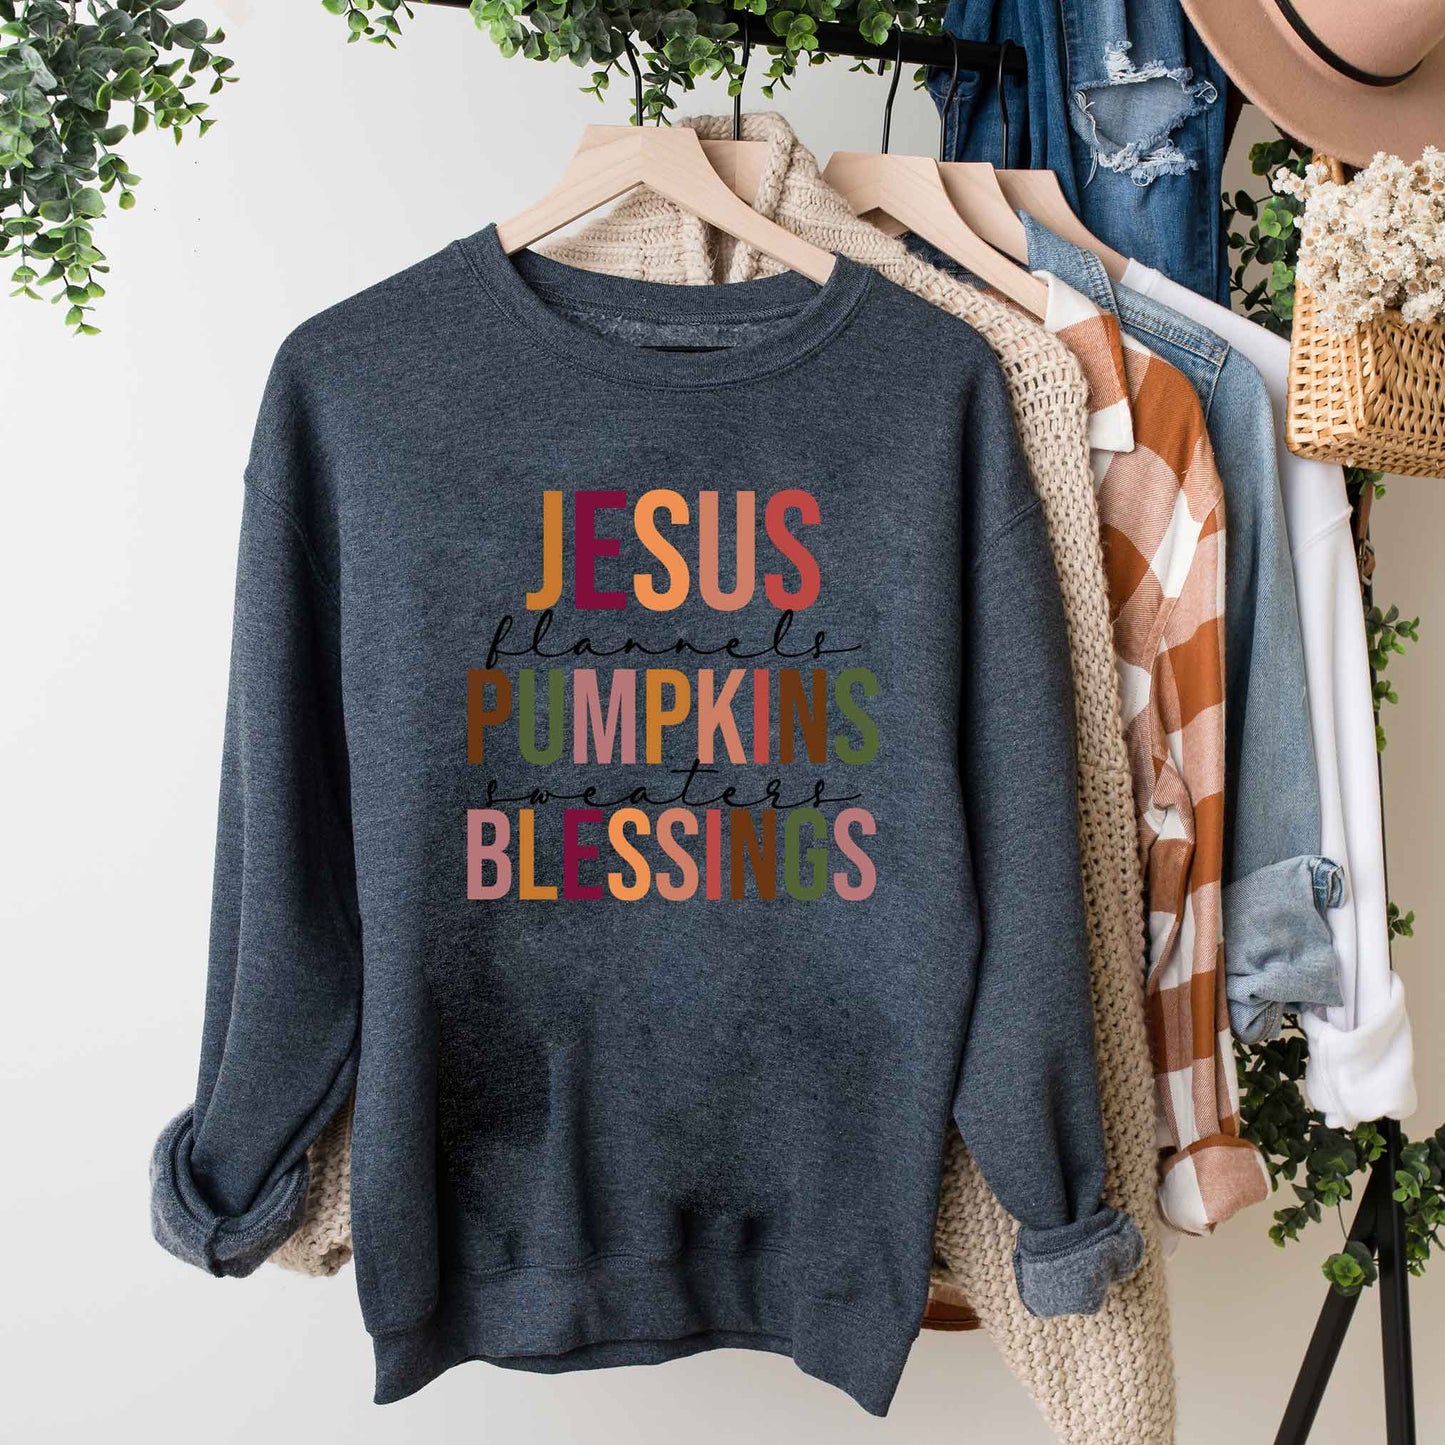 Jesus Pumpkins Blessings | Sweatshirt